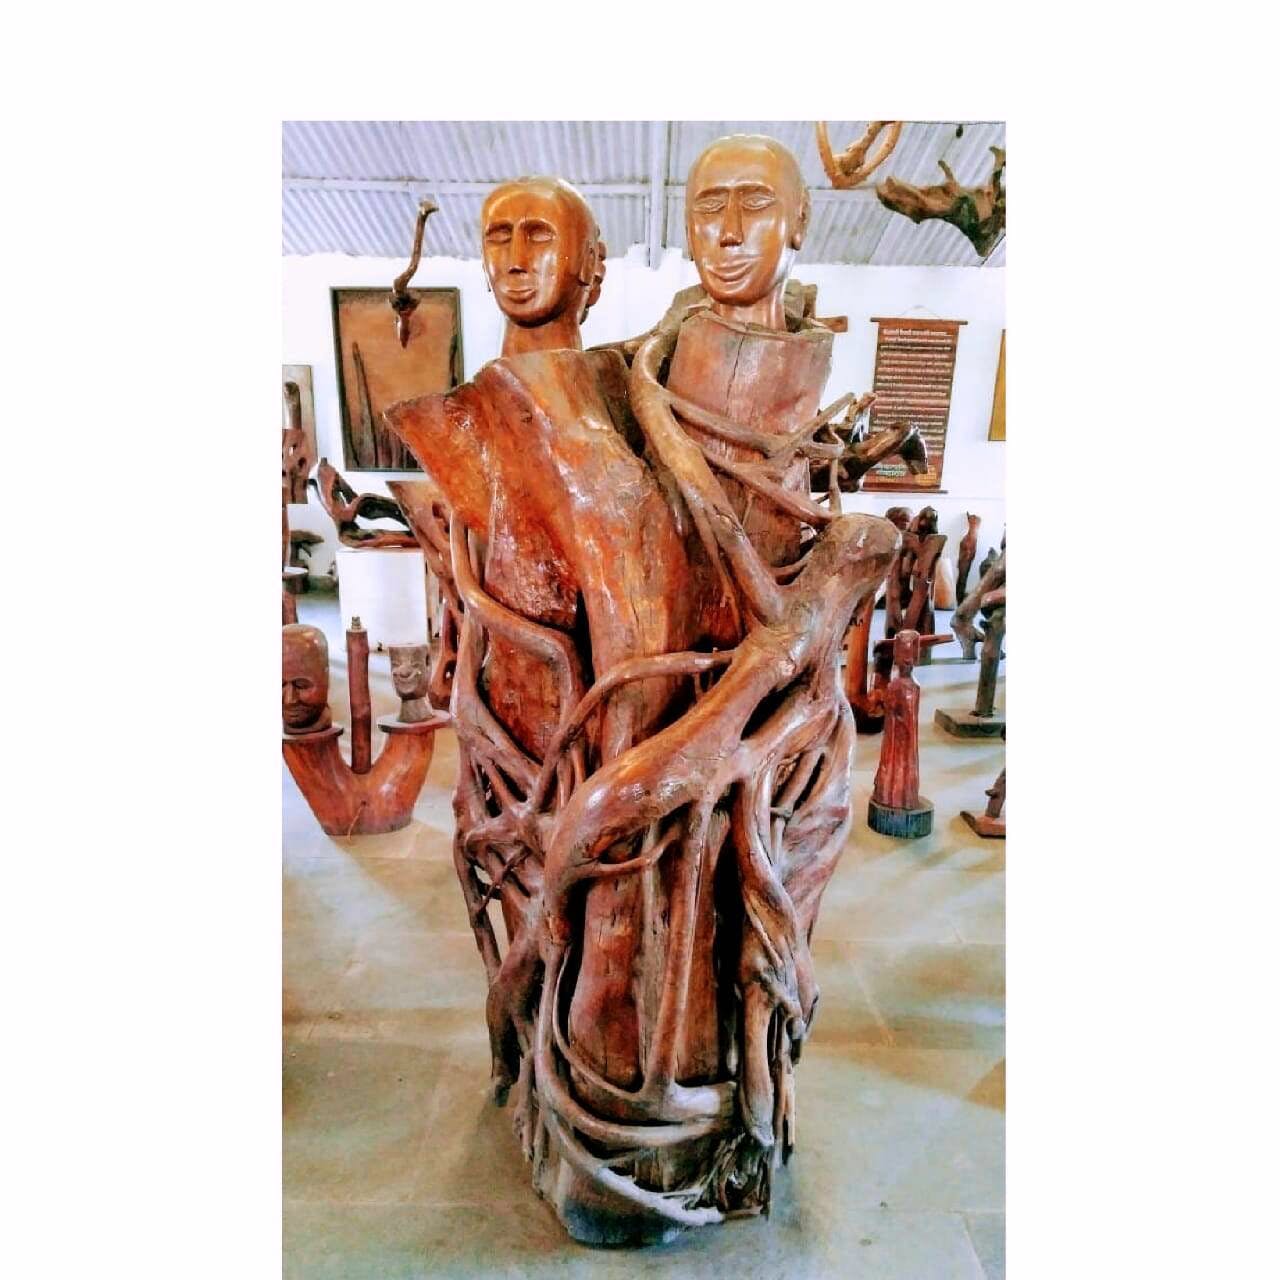 Sculpture,Statue,Art,Carving,Human body,Classical sculpture,Wood,Ceramic,Furniture,Figurine